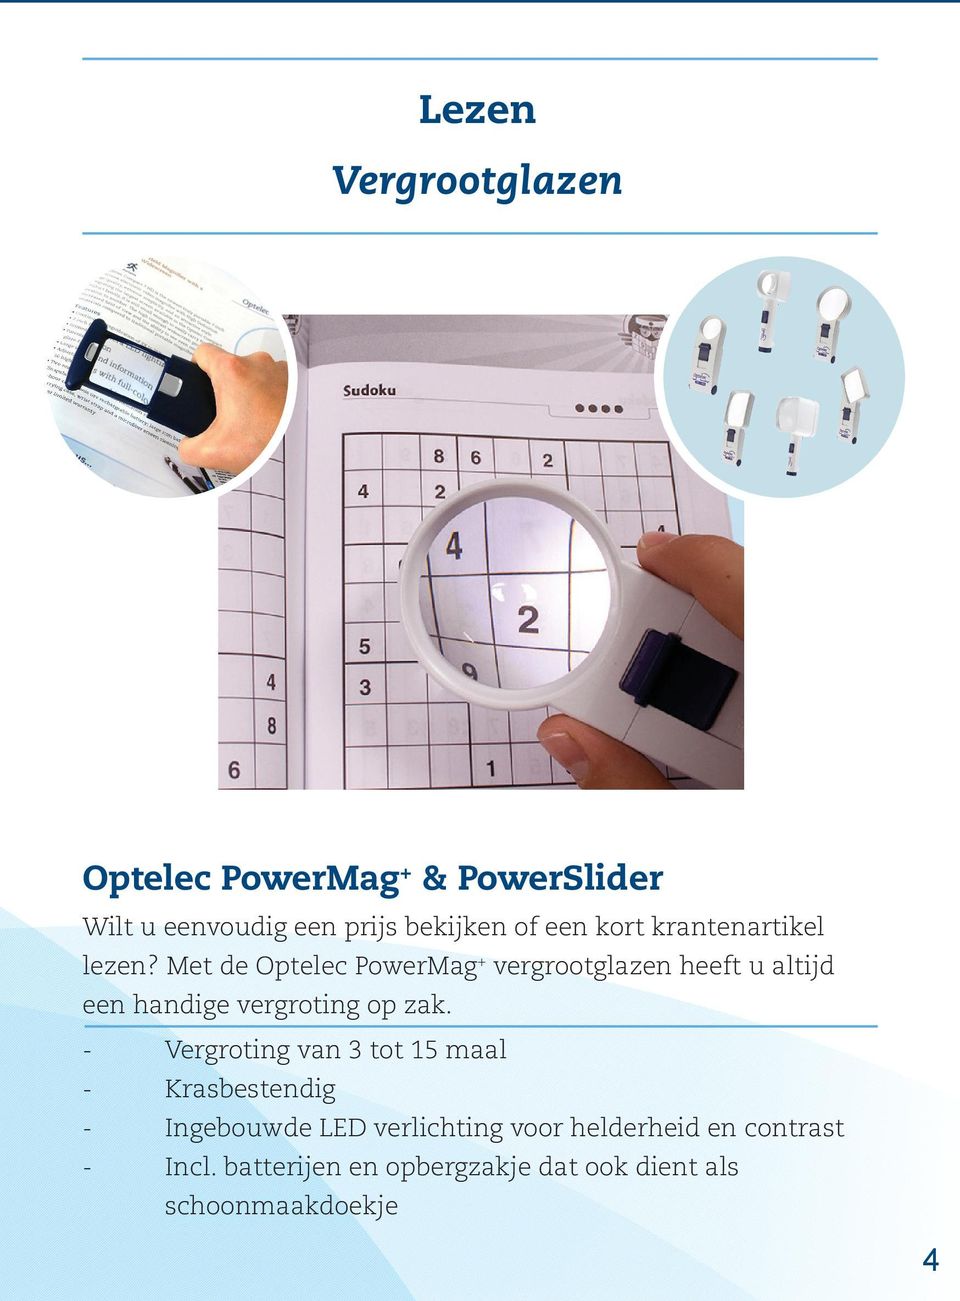 Met de Optelec PowerMag + vergrootglazen heeft u altijd een handige vergroting op zak.